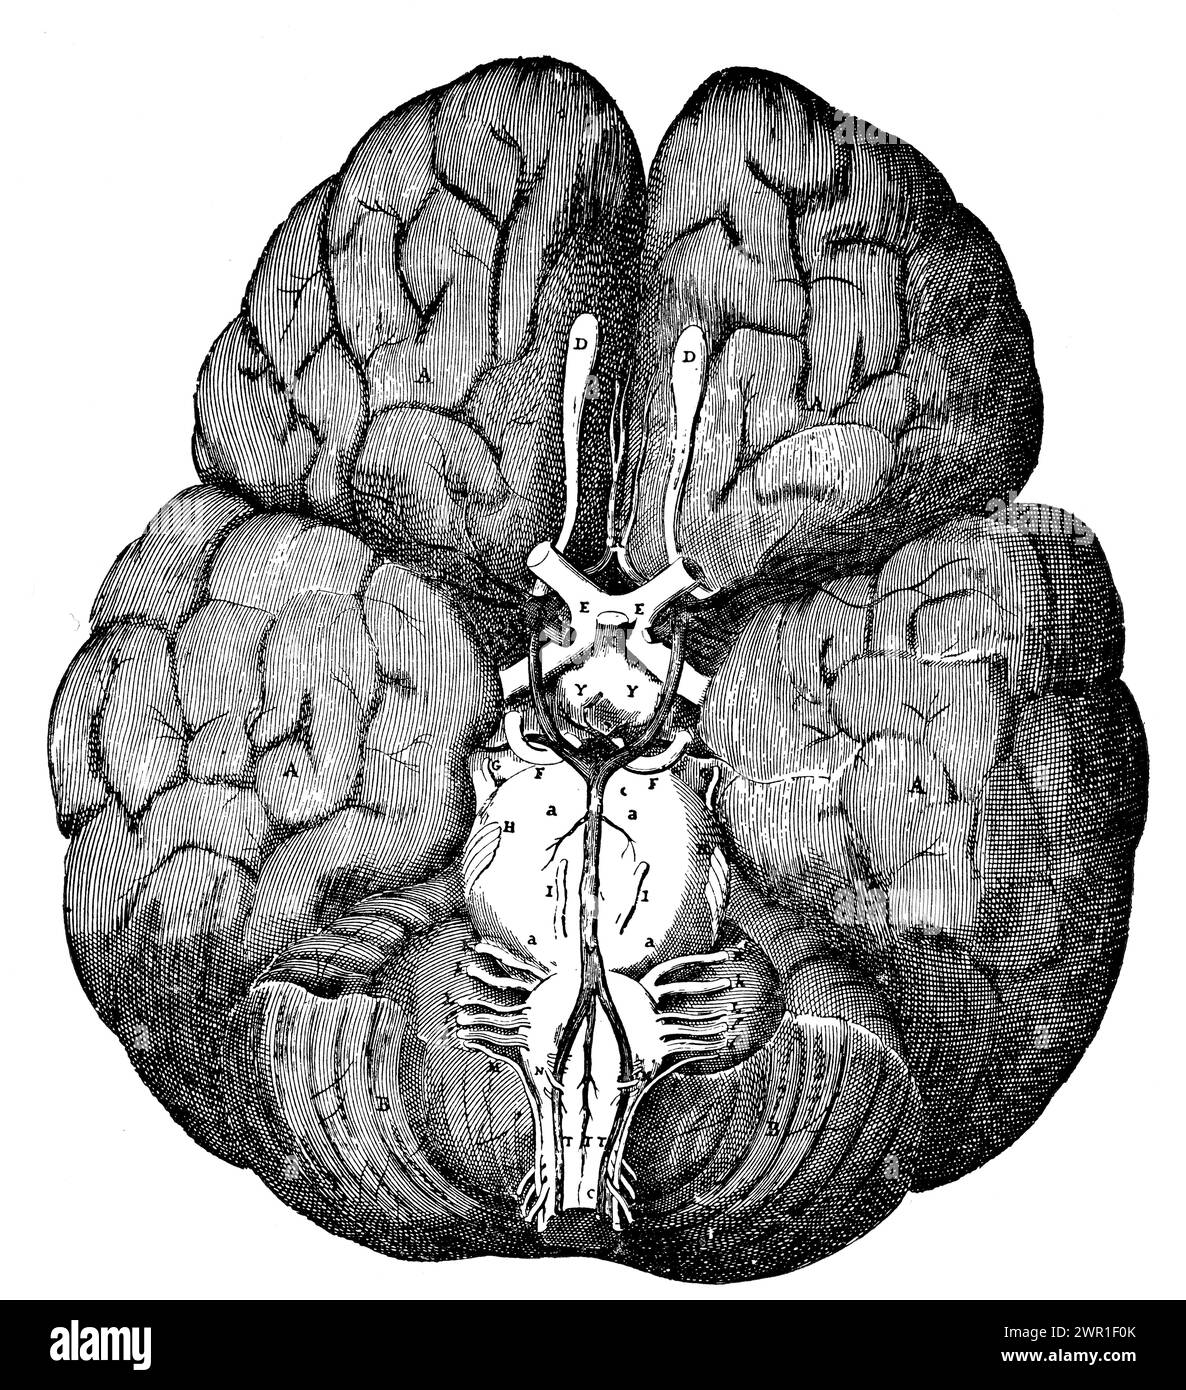 "The Circle of Willis", da "cerebri Anatome", 1664. Di Thomas Willis (1621-1675). Illustrazione di Sir Christopher Wren (1632-1723). Willis fu un pioniere nella ricerca sull'anatomia del cervello, del sistema nervoso e dei muscoli. La sua scoperta più notevole fu il "cerchio di Willis", un cerchio di arterie alla base del cervello. L'anatomia del cervello e dei nervi di Willis, come descritto nel suo anatomo cerebrale del 1664, è minuscola ed elaborata. Foto Stock